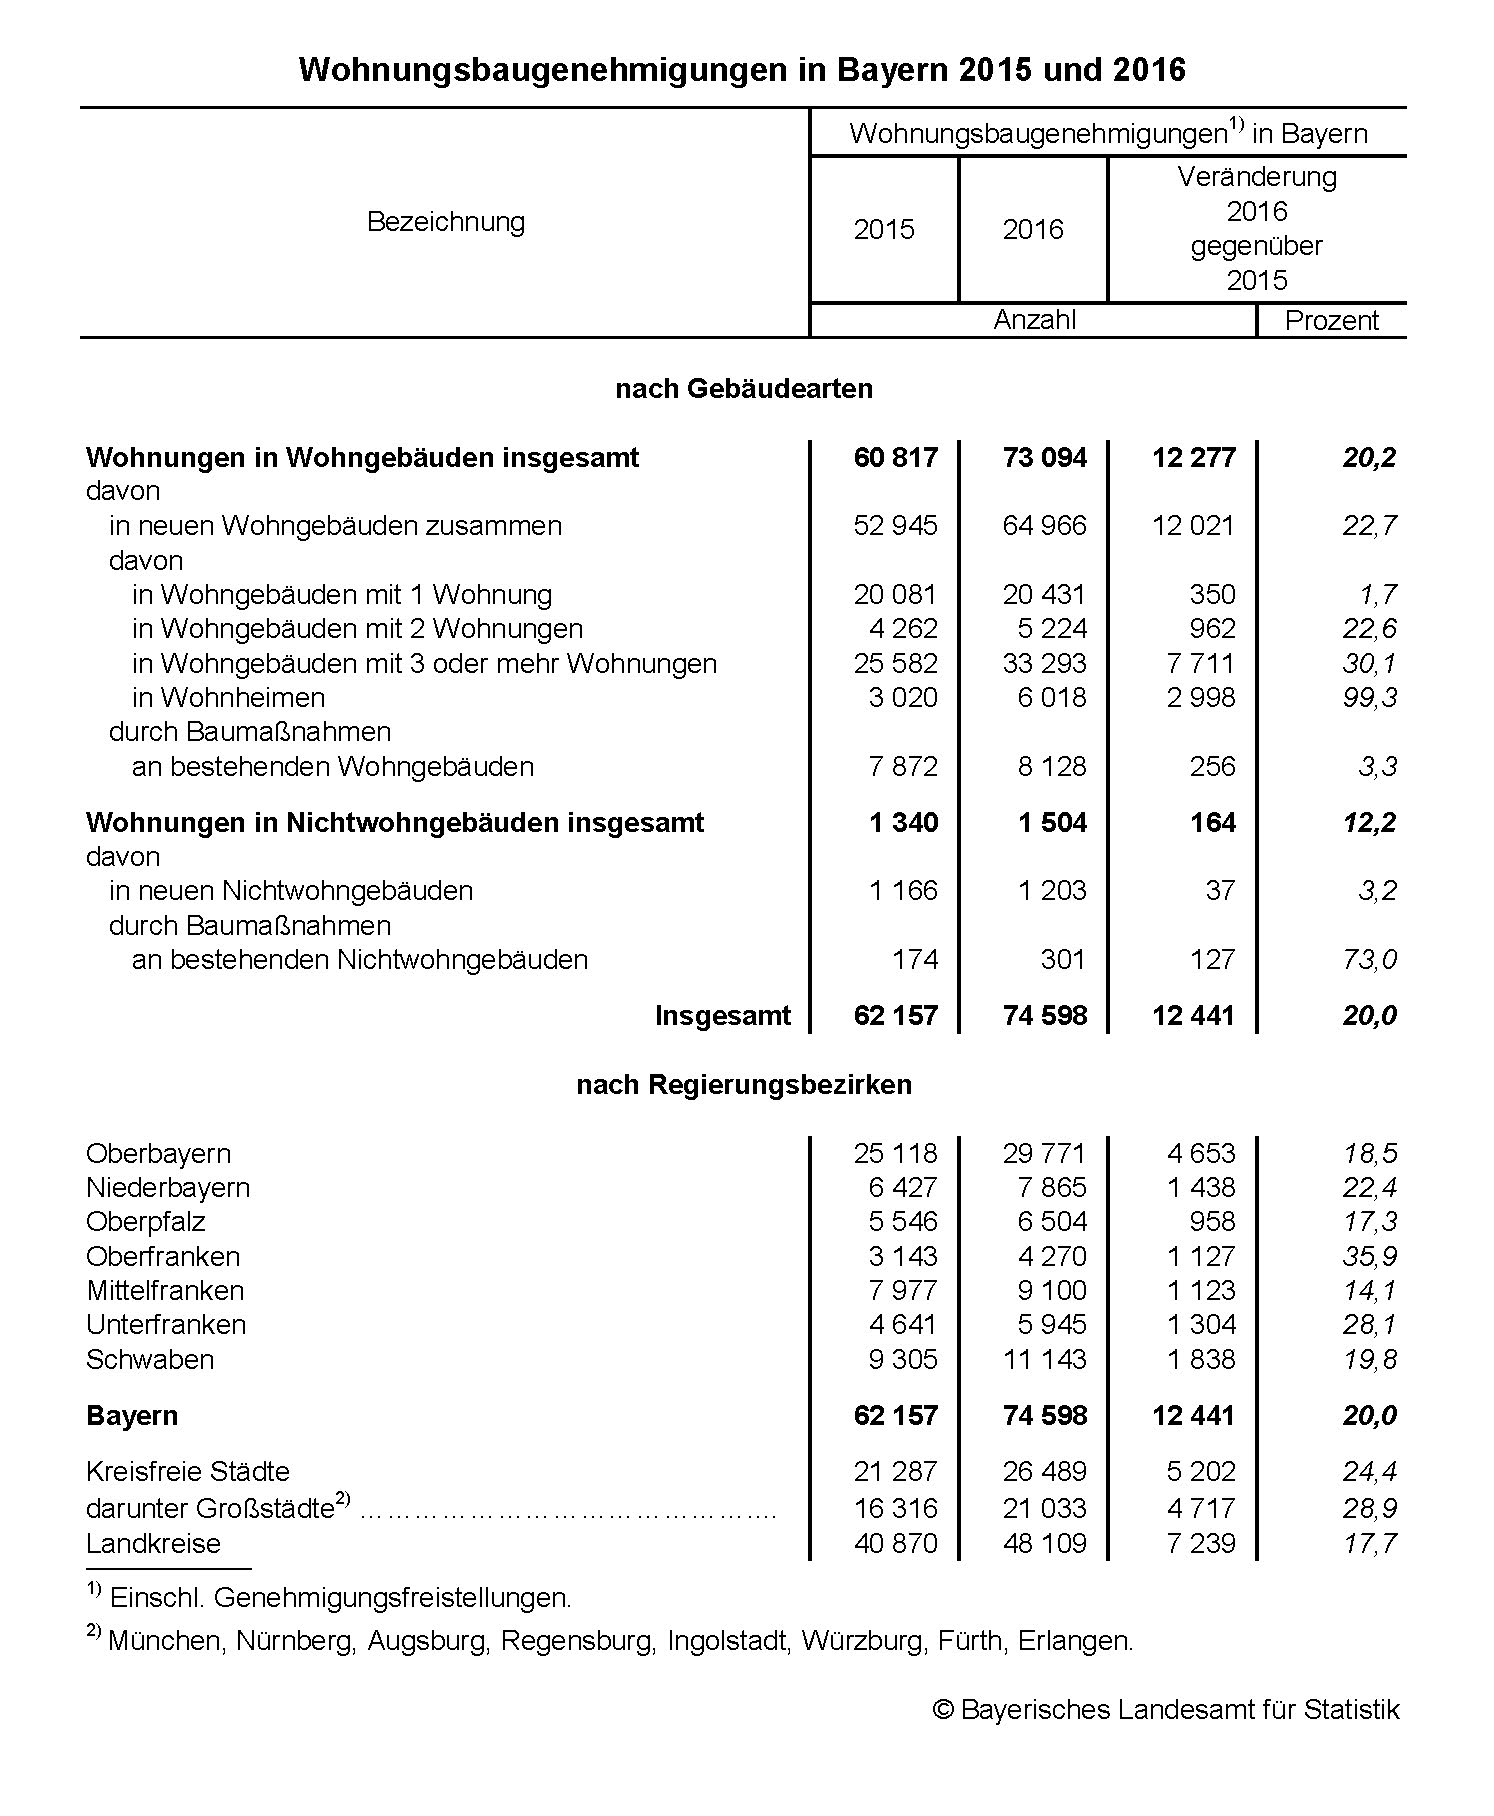 Wohnungsbaugenehmigungen in Bayern 2015 und 2016